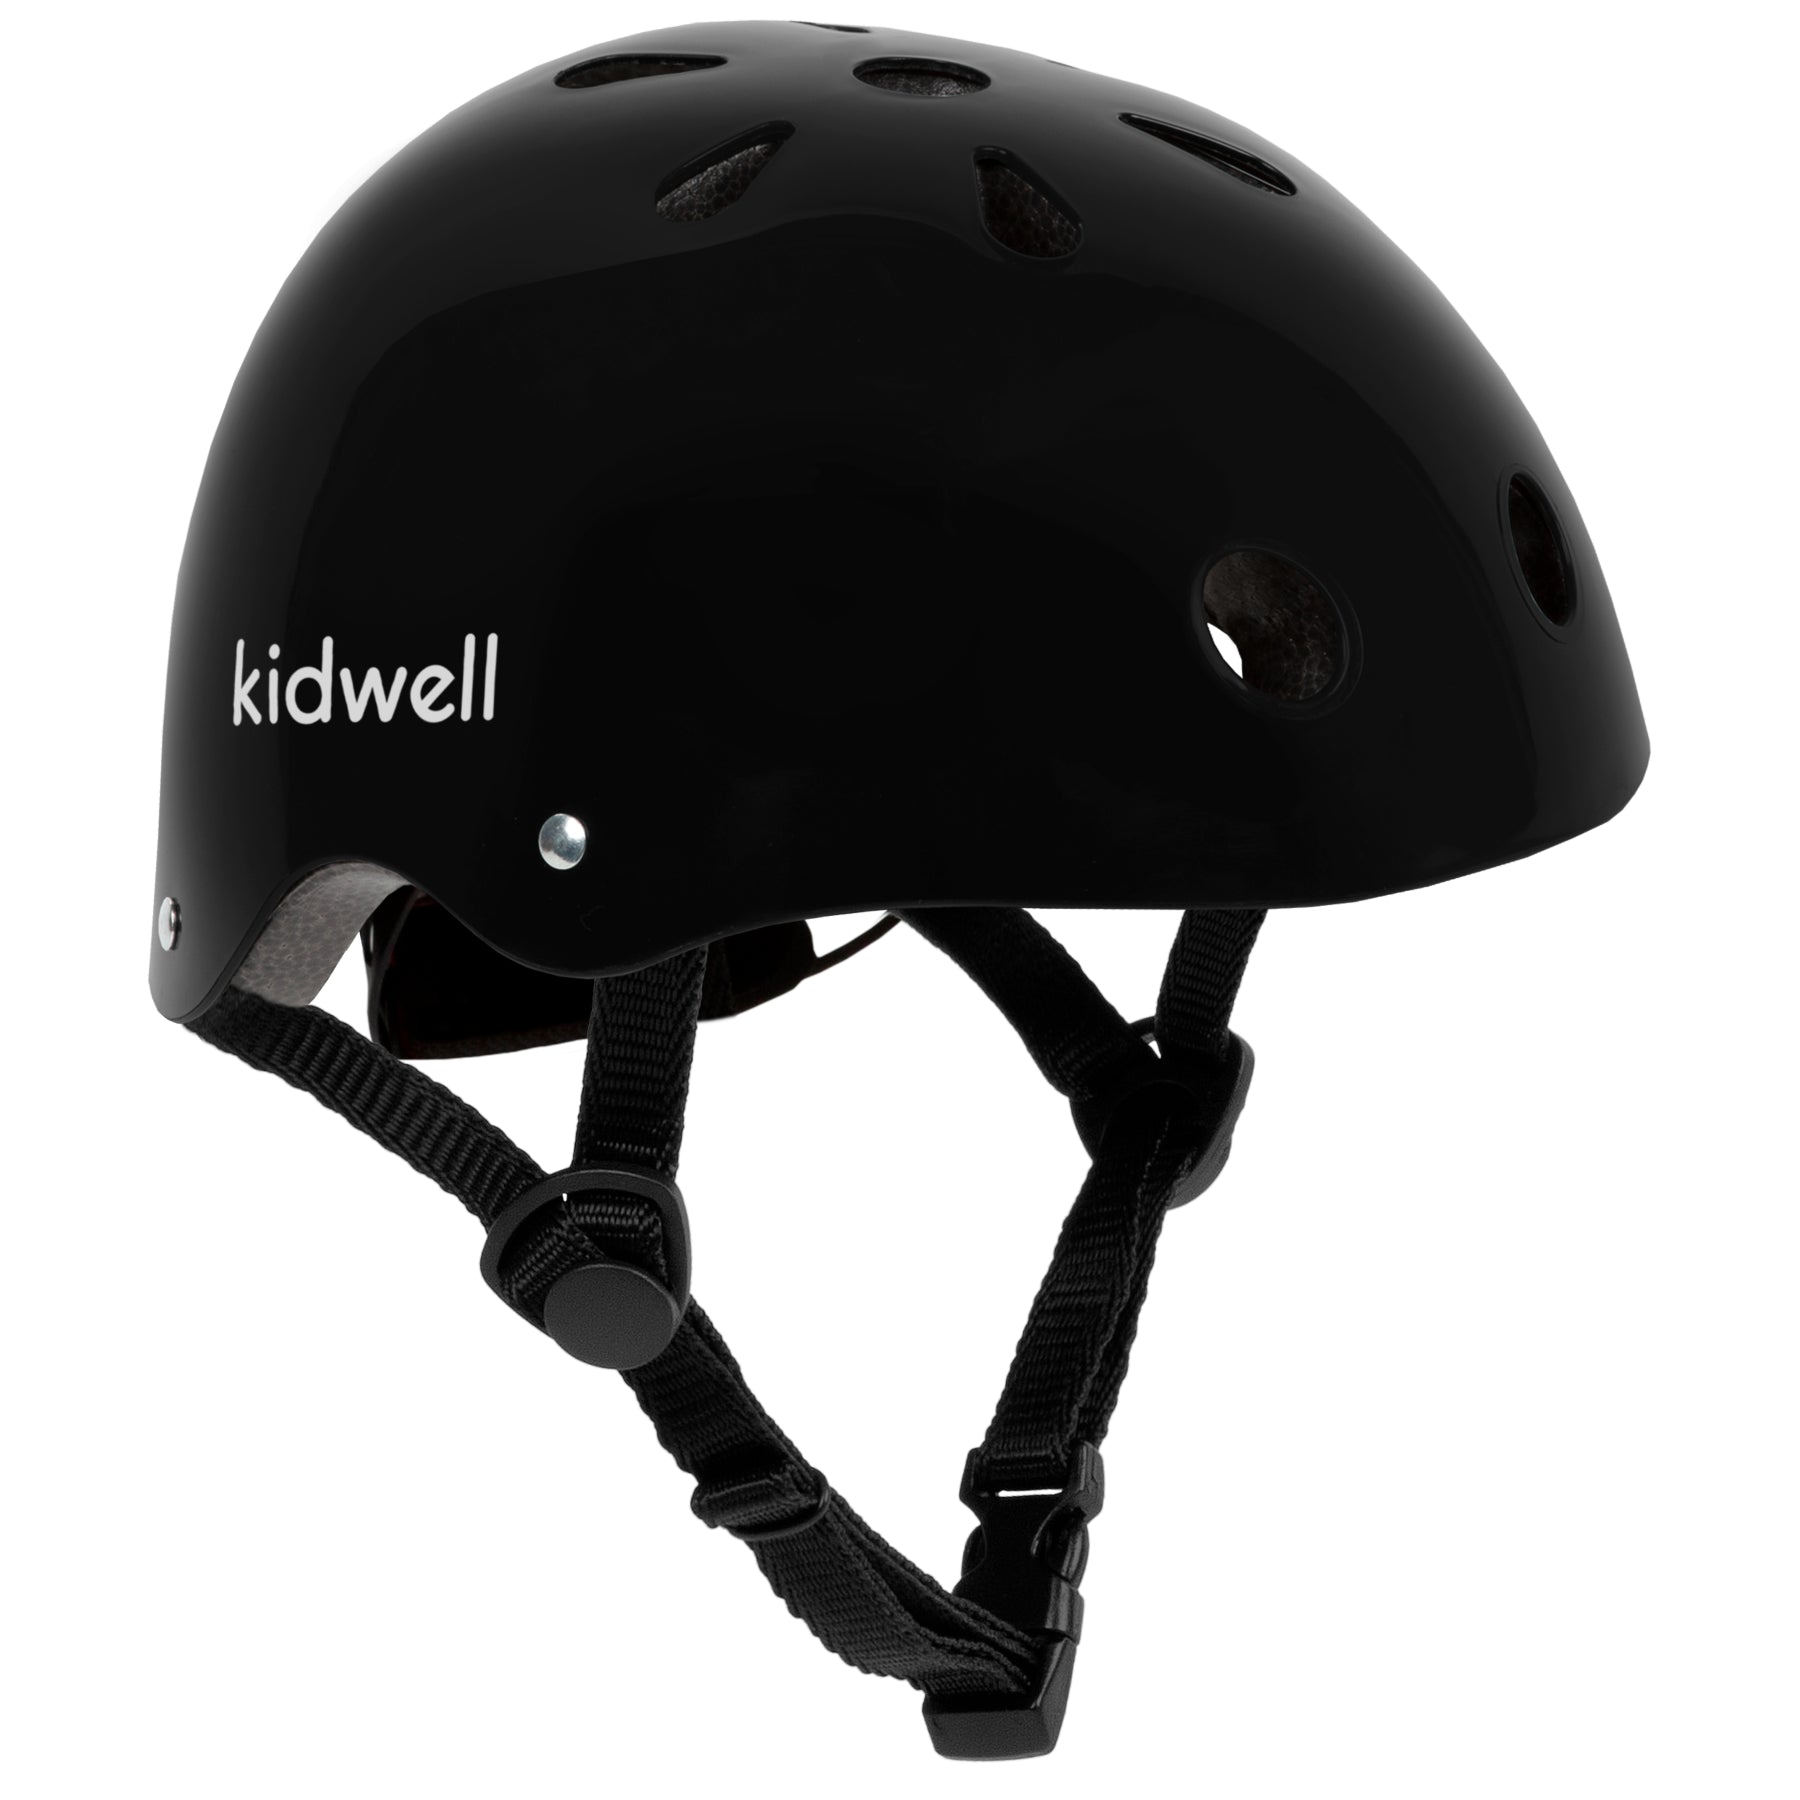 Kidwell ORIX II S - Black